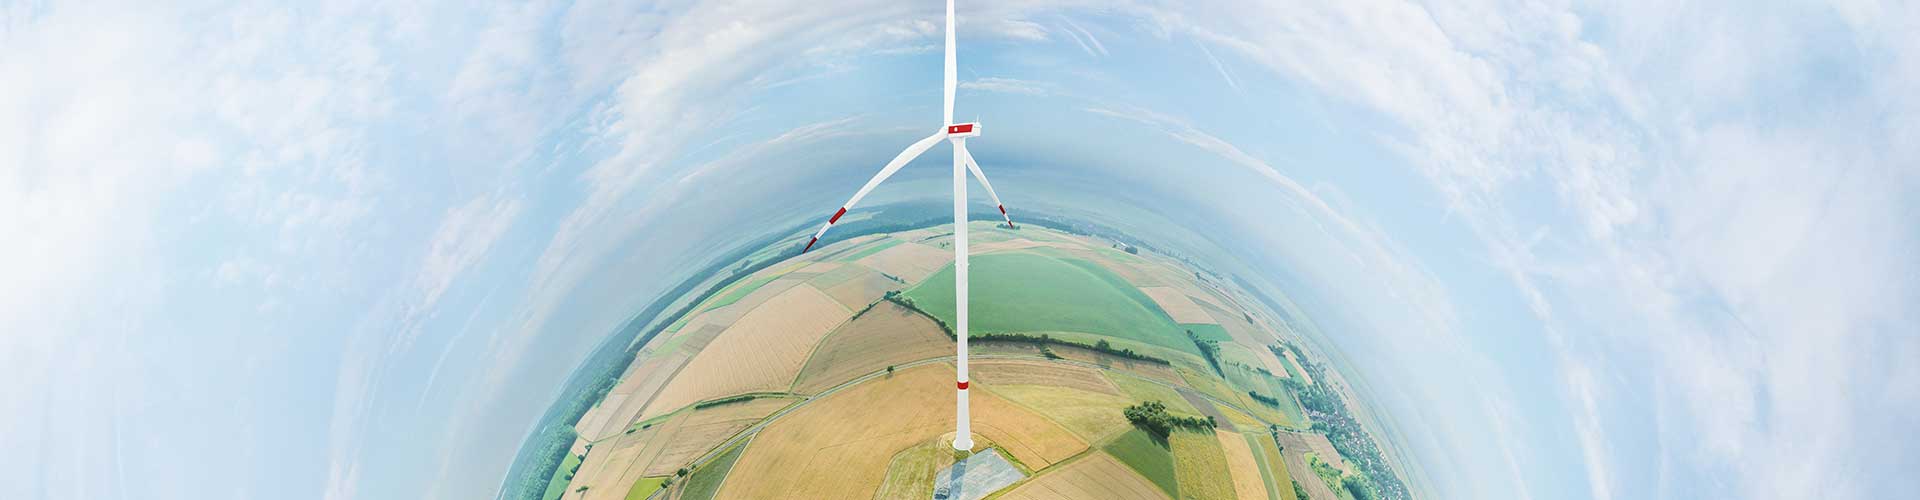 Erneuerbare Energien - Max Bögl Wind AG